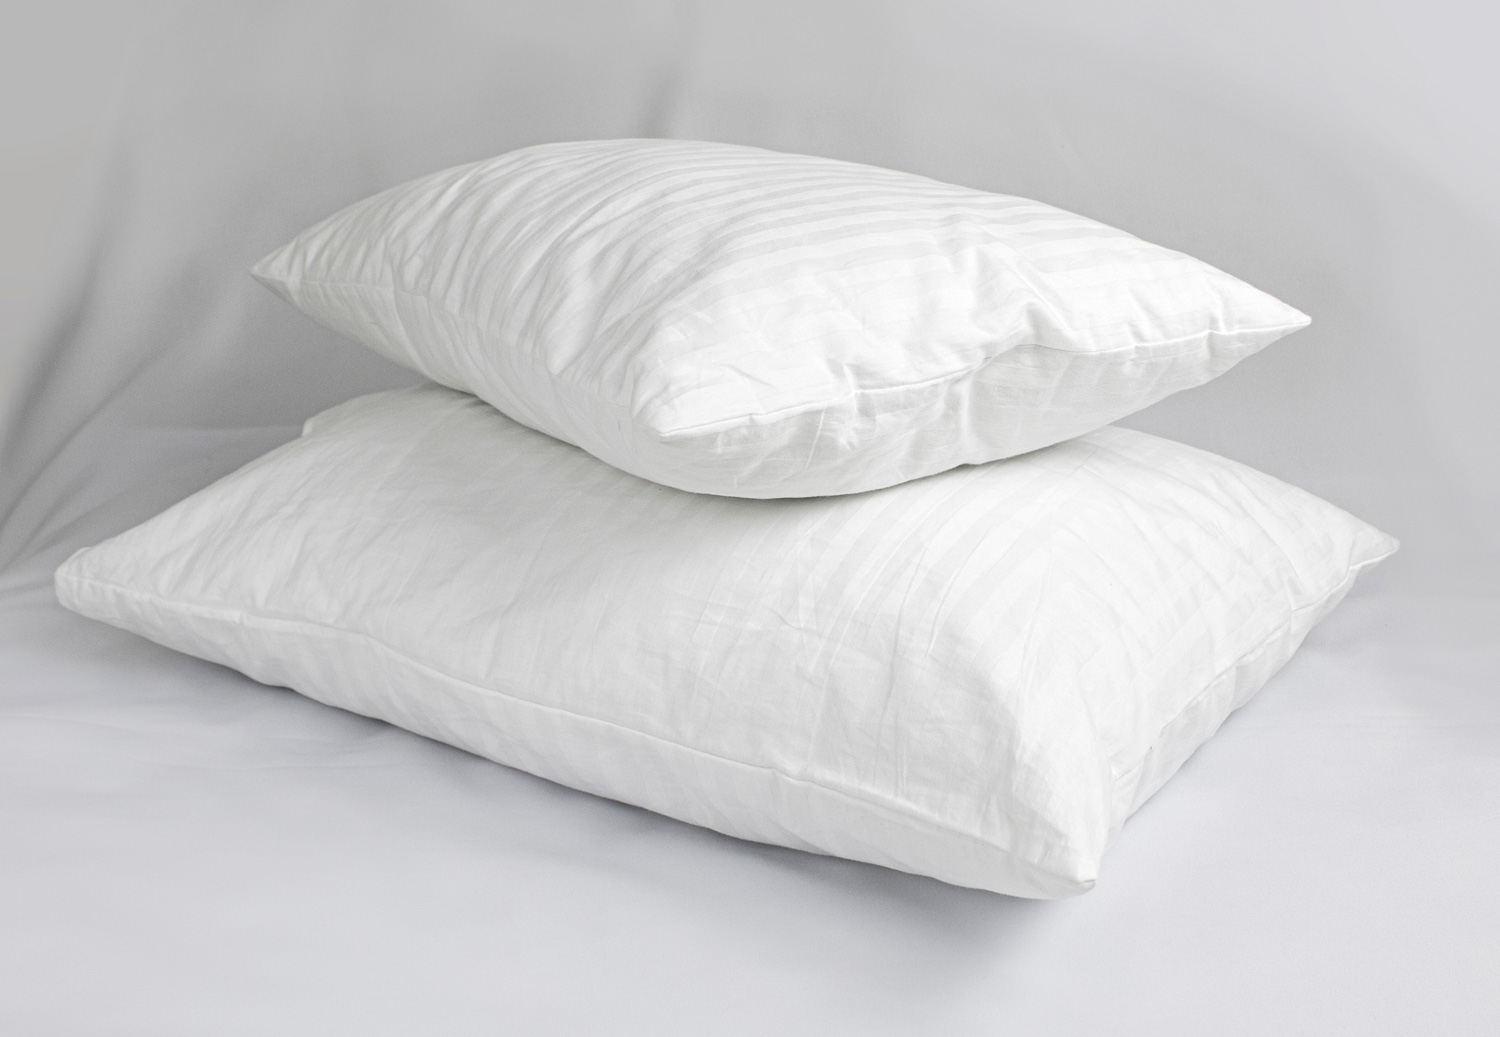 Two white pillows in striped cotton pillowcases.